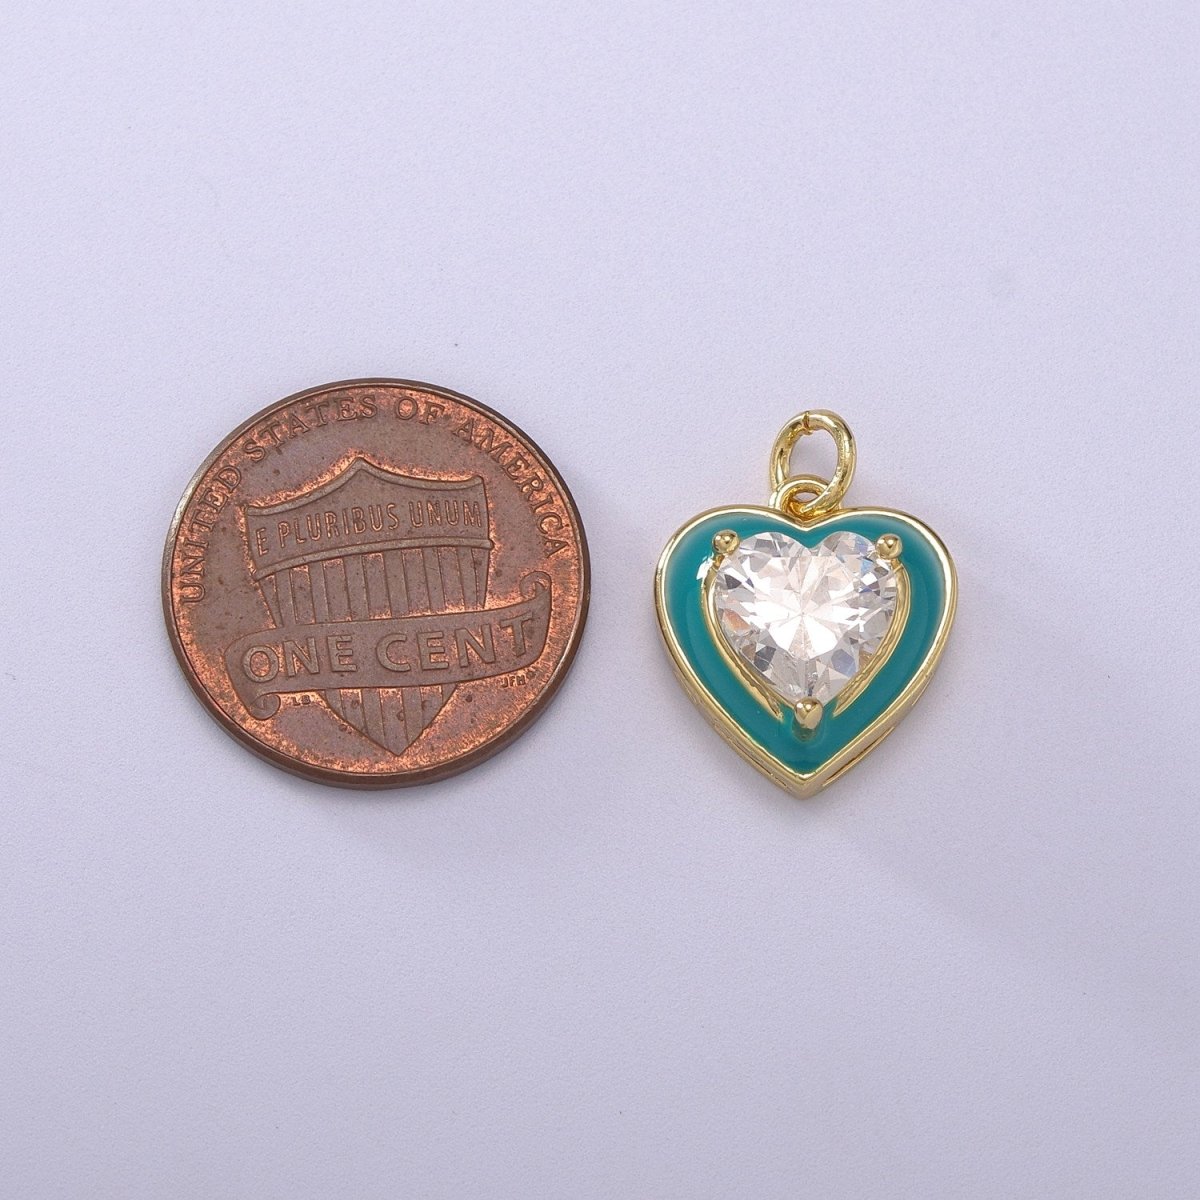 Big Clear CZ Micro Pave on Enamel Colorful Heart Shape Pendant 14K Gold Filled Enamel Charm, Necklace Bracelet Component M-670 - M-673 - DLUXCA